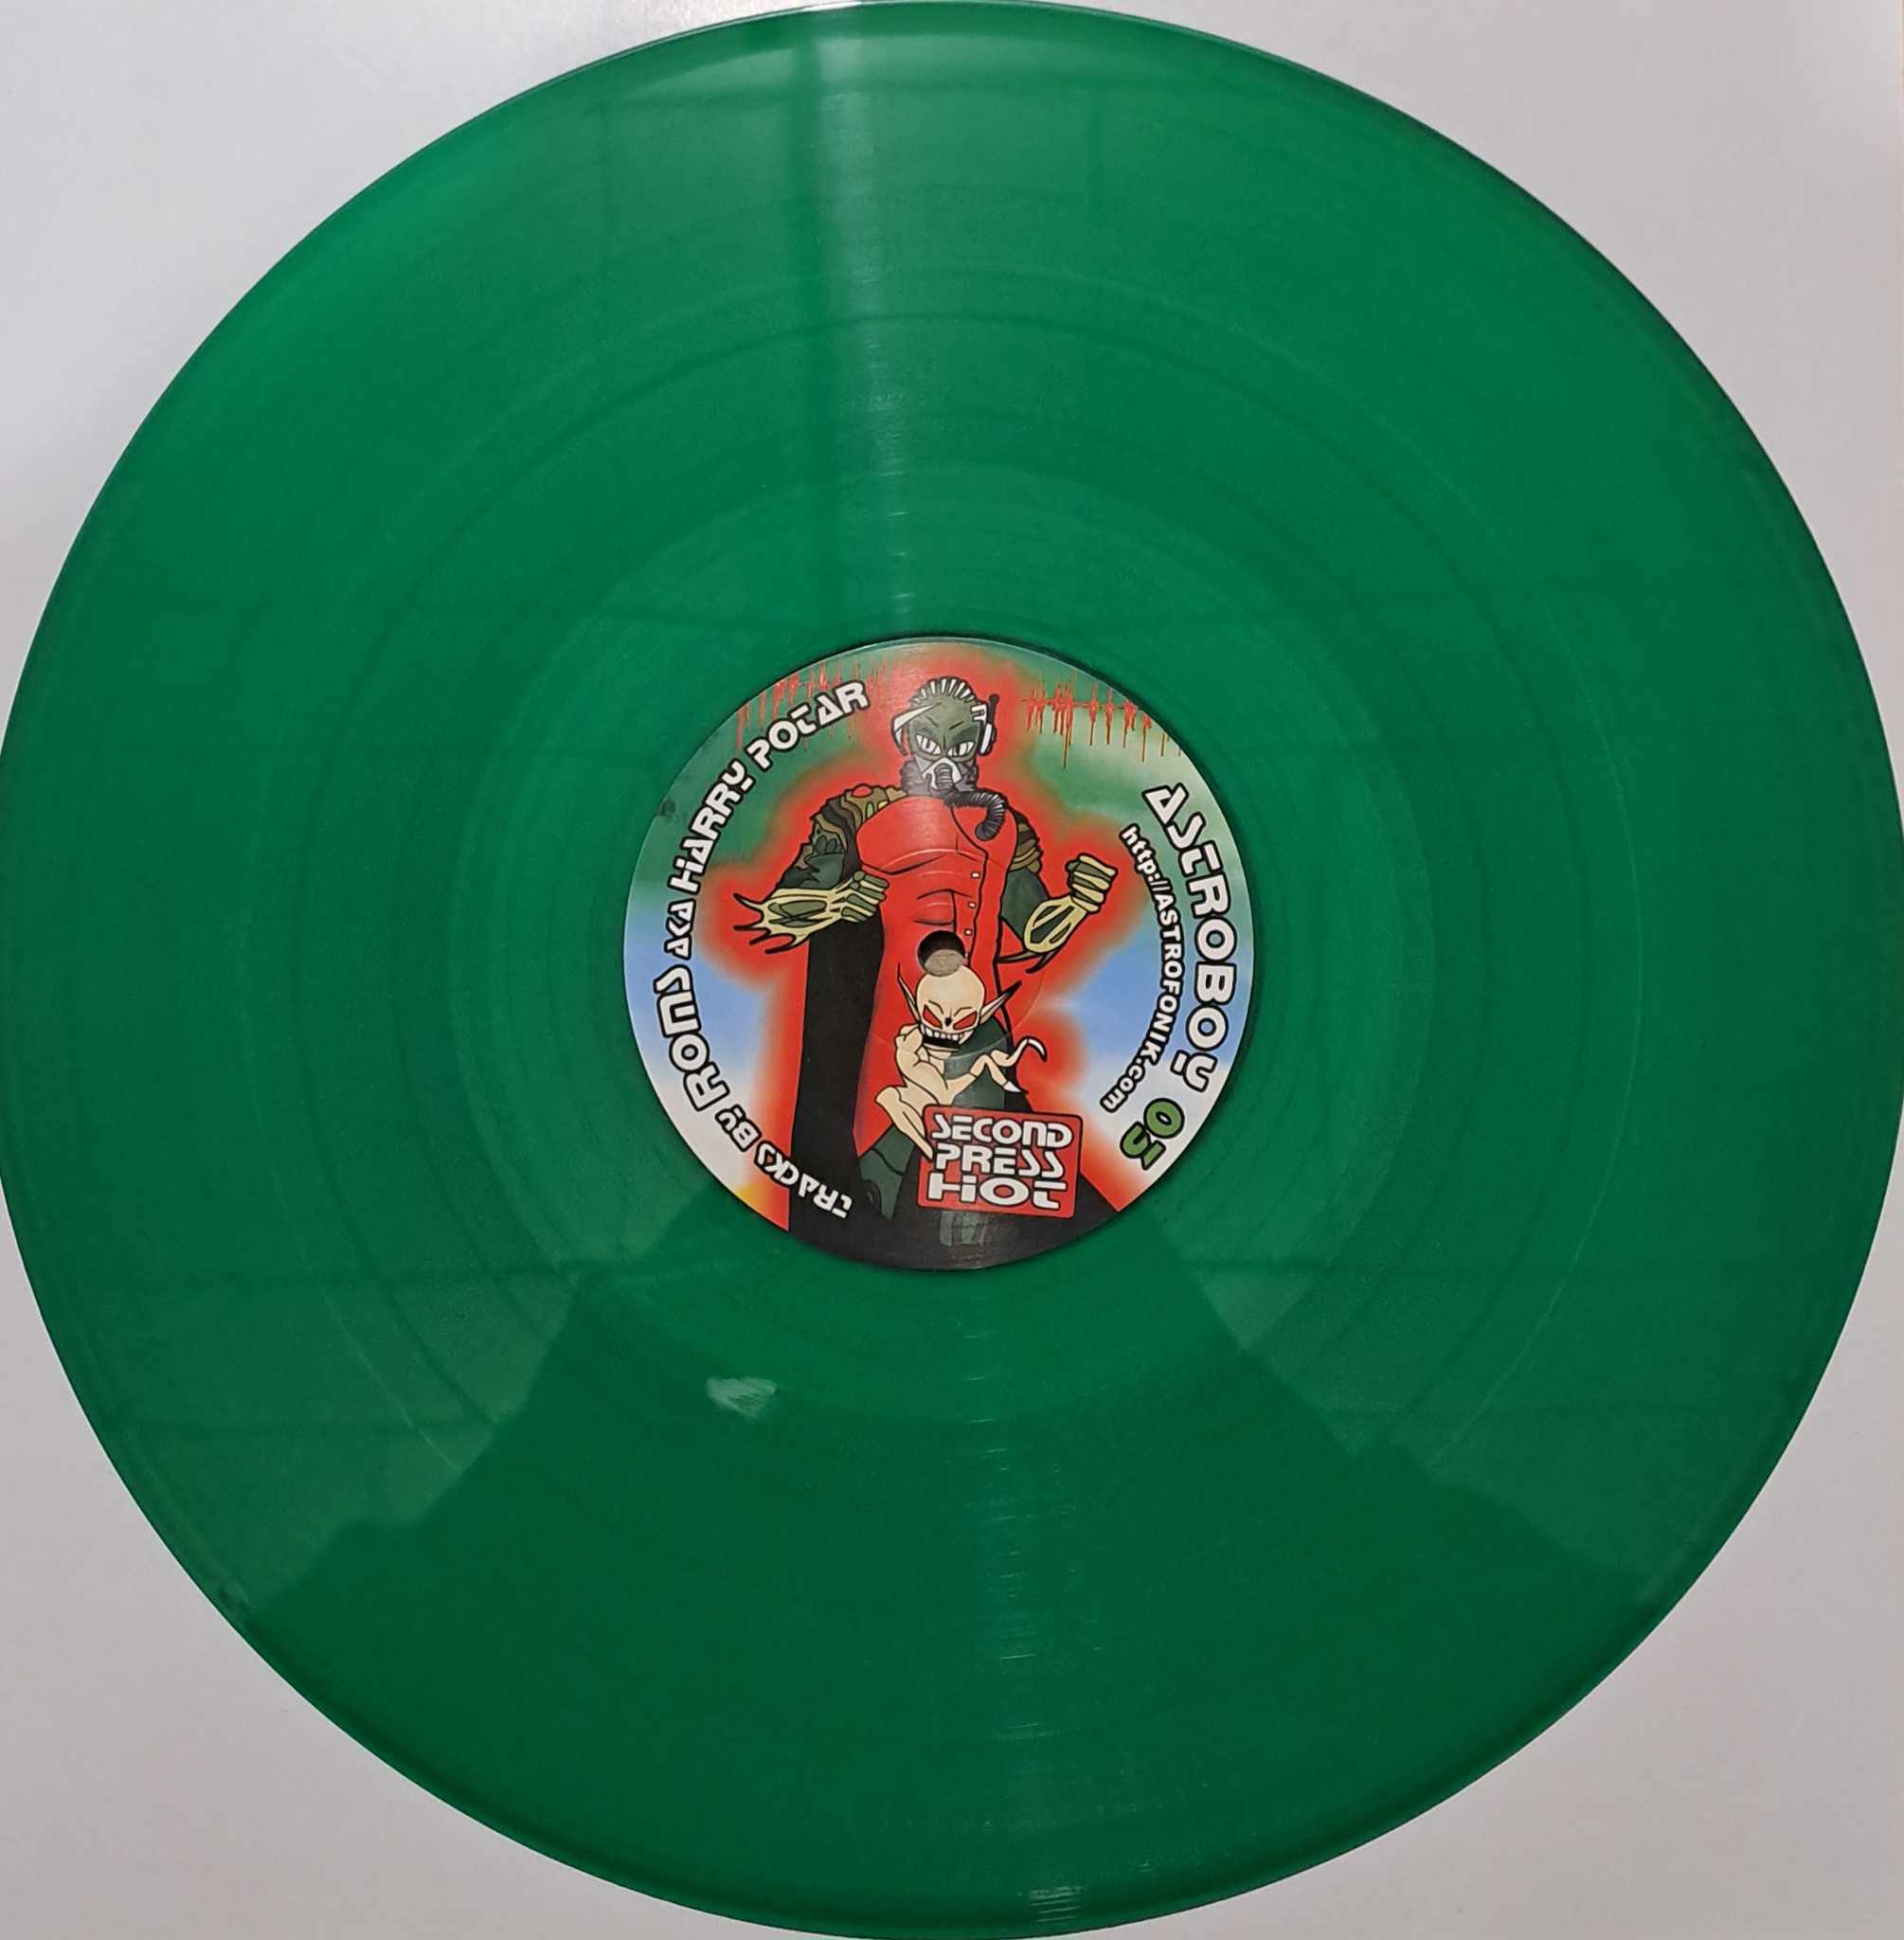 Astroboy 03 - vinyle tribecore